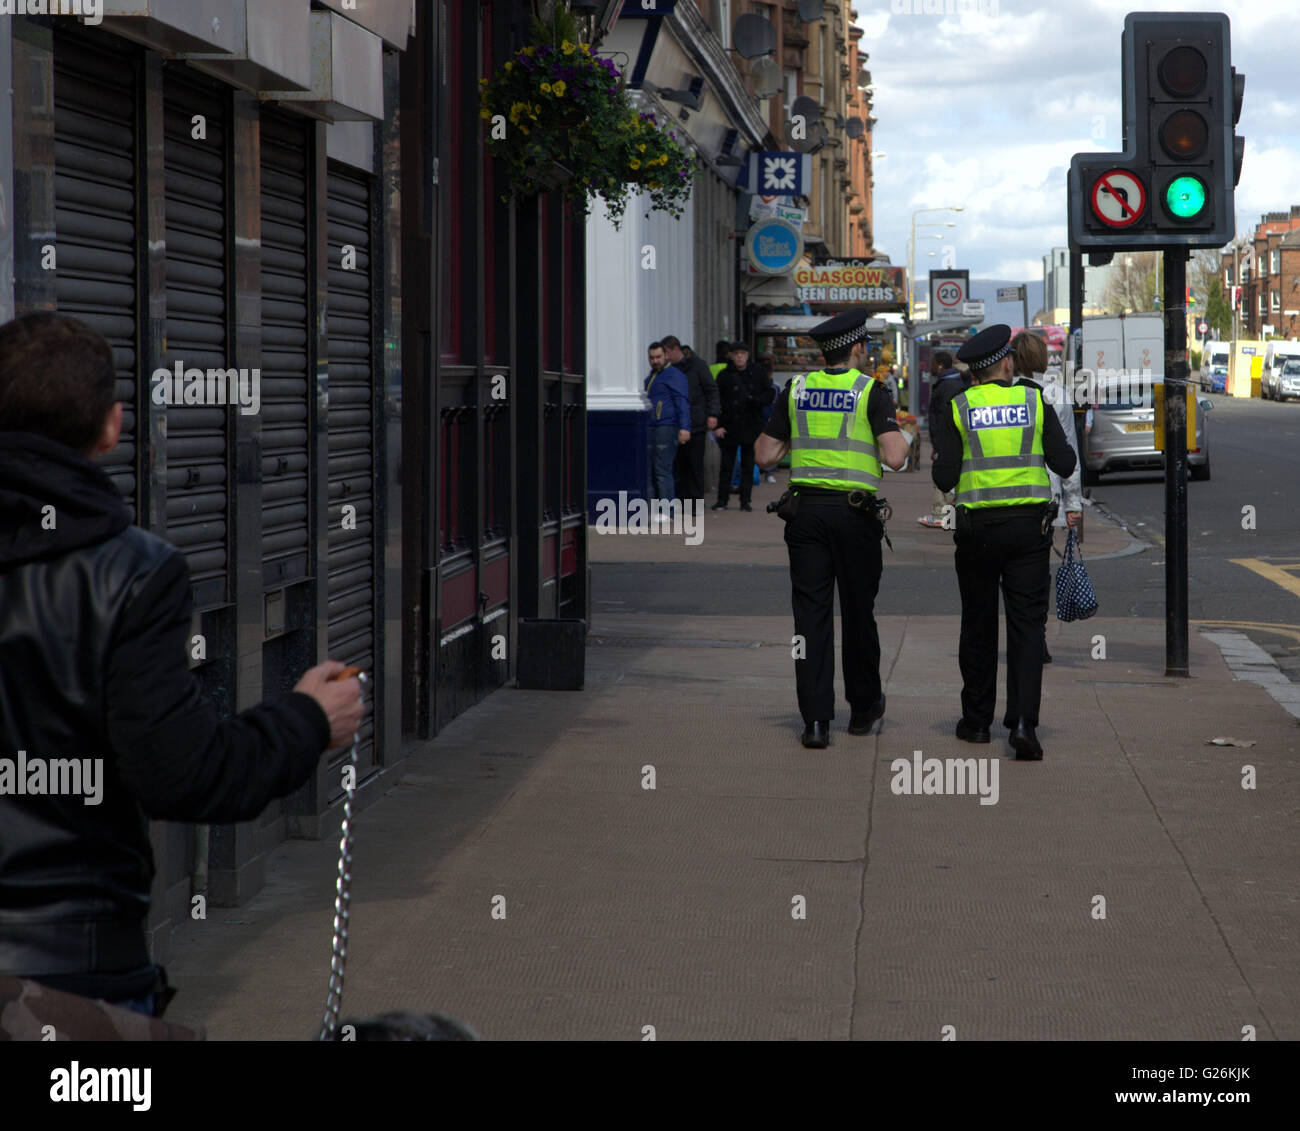 La policía de patrulla en la peor zona de Escocia, Govanhill, Glasgow, Escocia, Reino Unido. Foto de stock